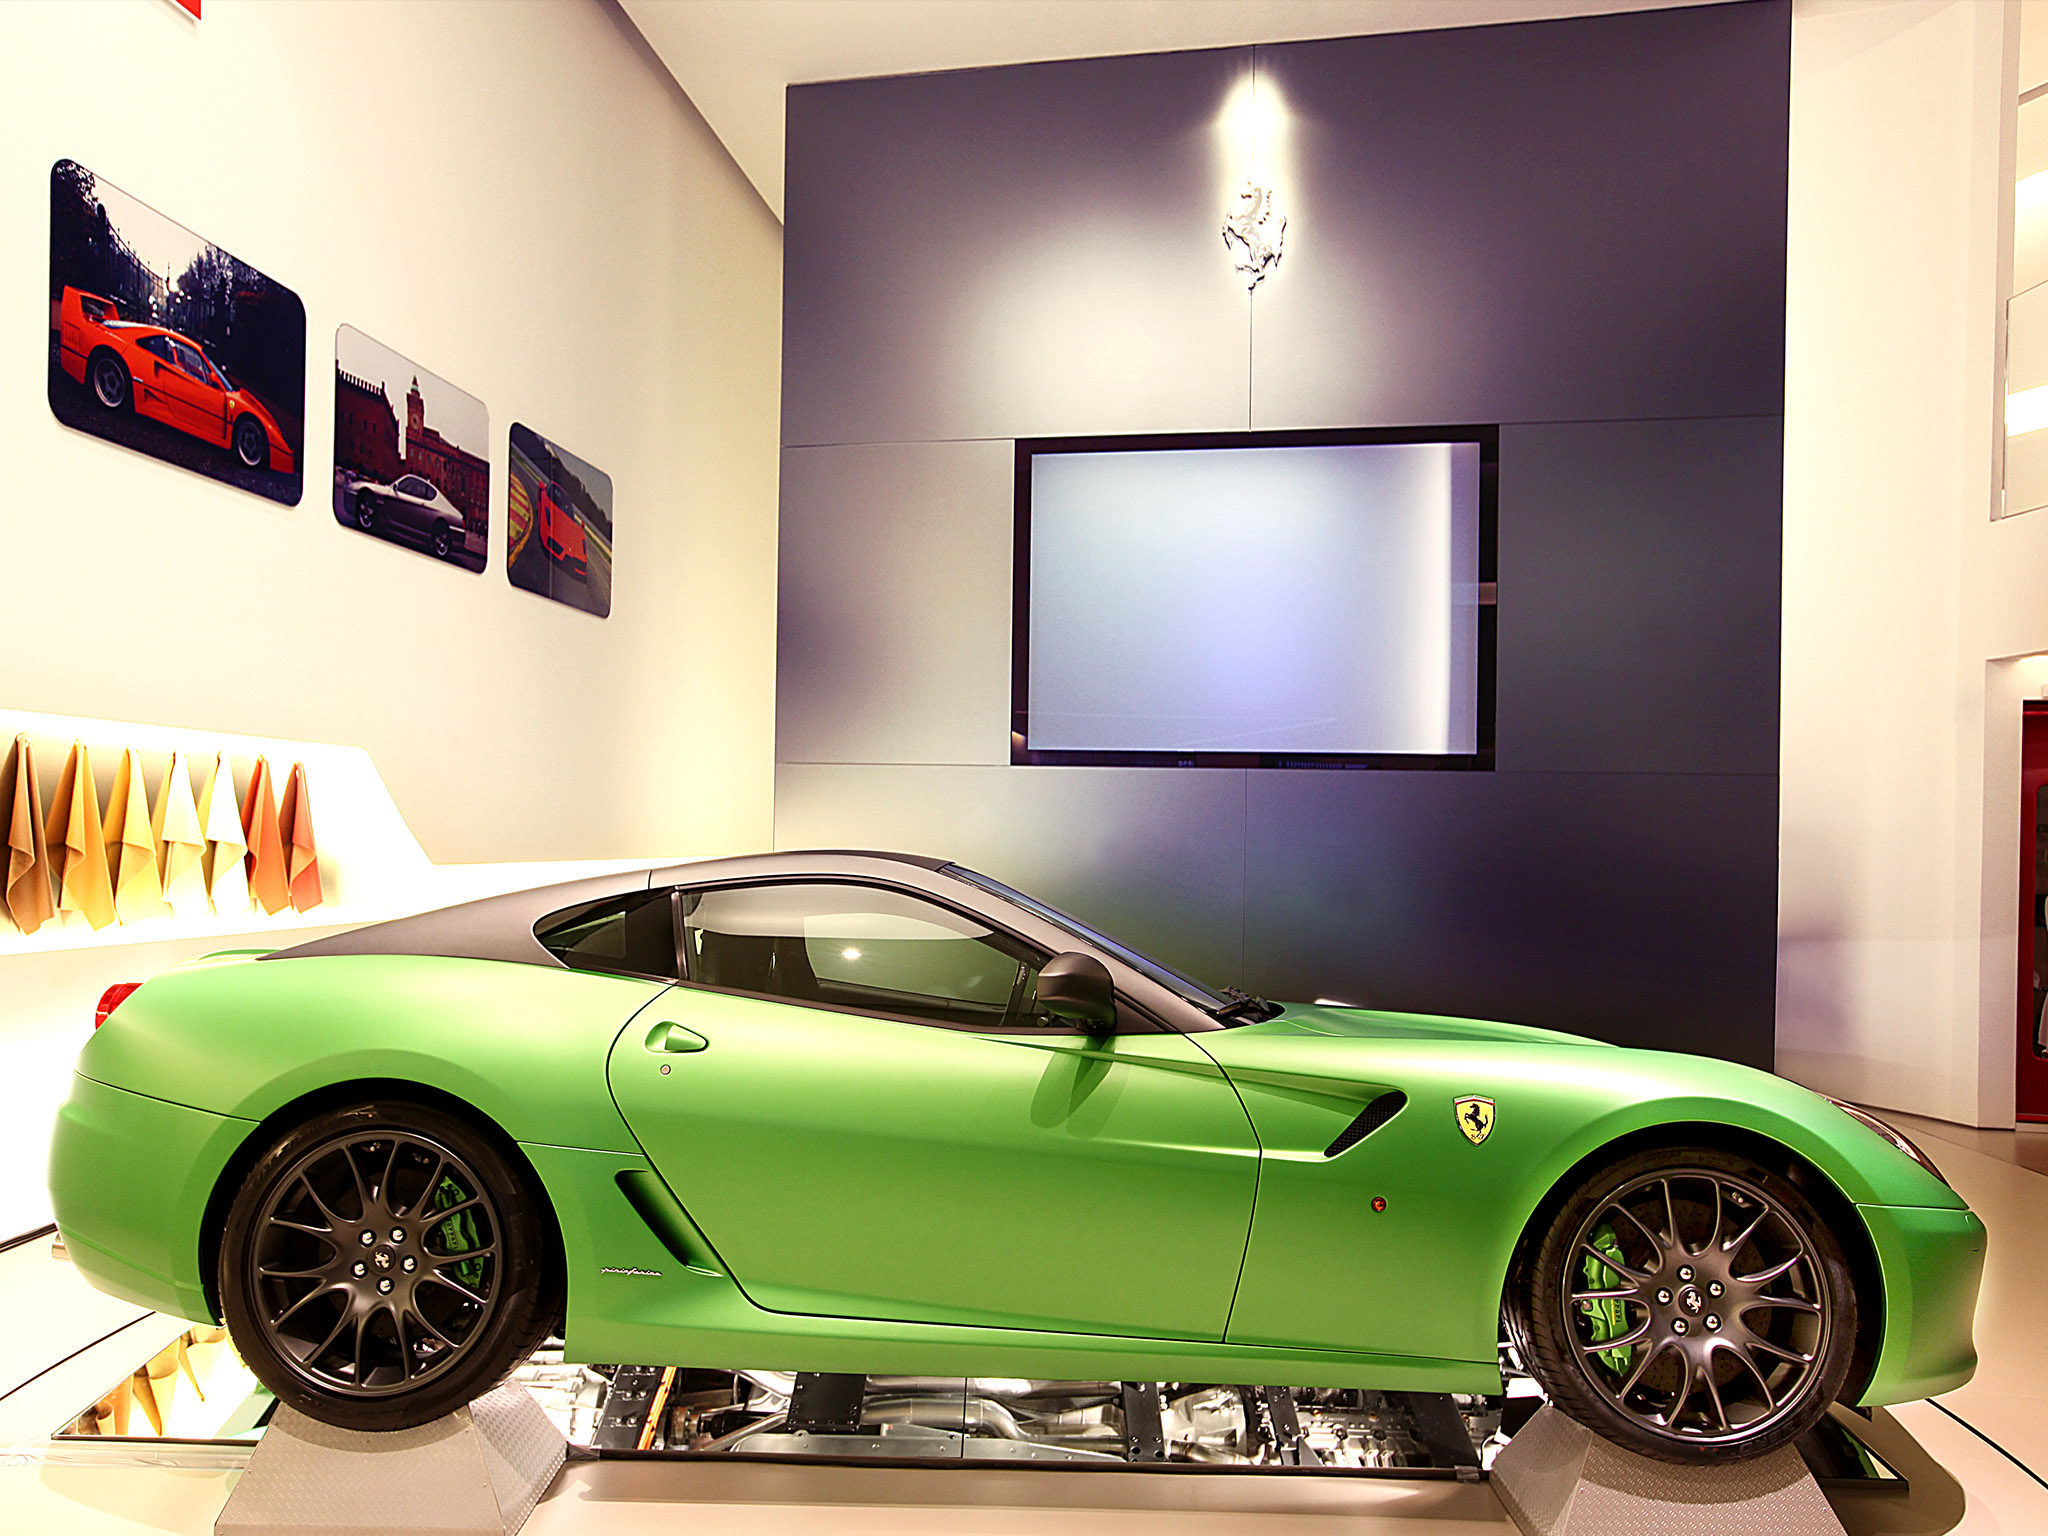 2010, Ferrari, 599, Gtb, Hy kers, Concept, Supercar, Supercars Wallpaper